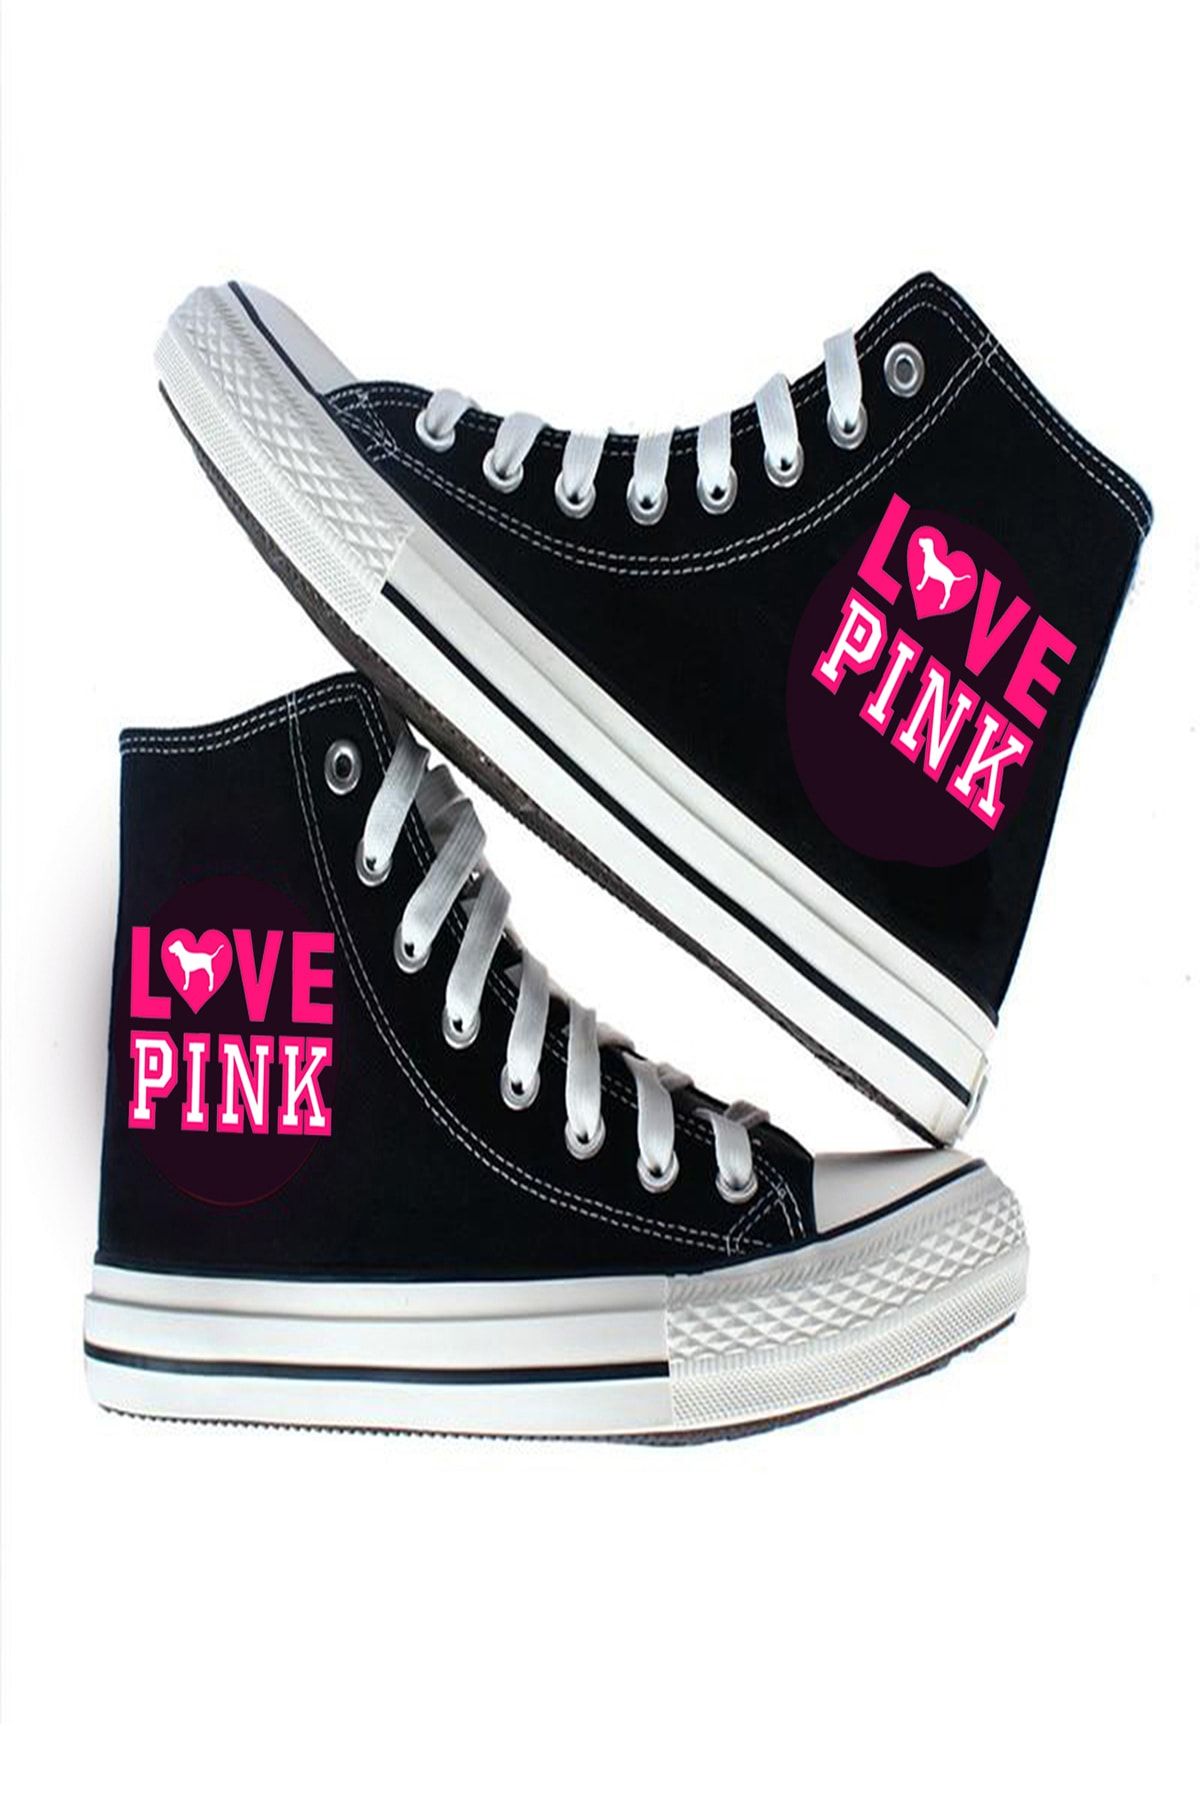 Art's Siyah - Love Pink Tasarım Unisex Canvas Ayakkabı